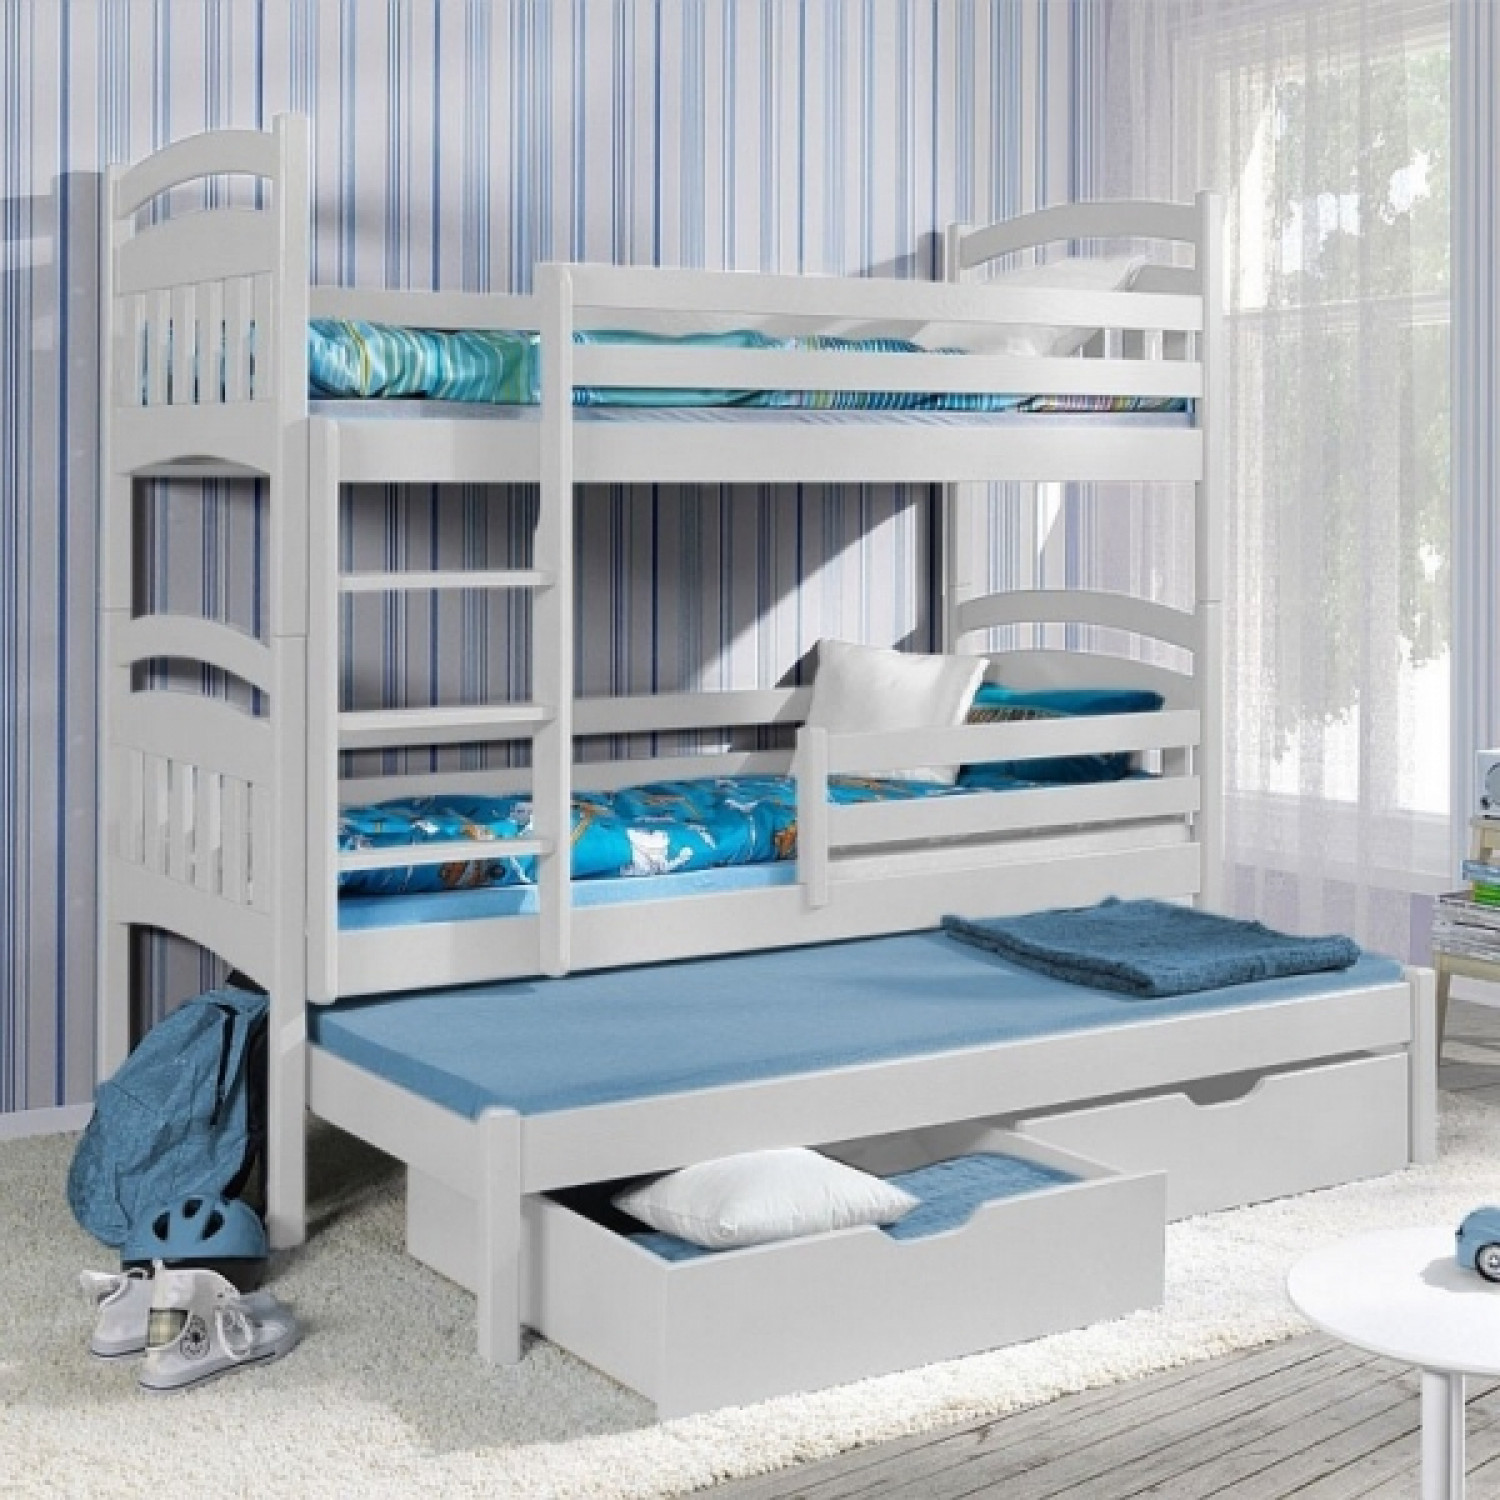 двухъярусная кровать для детей погодок